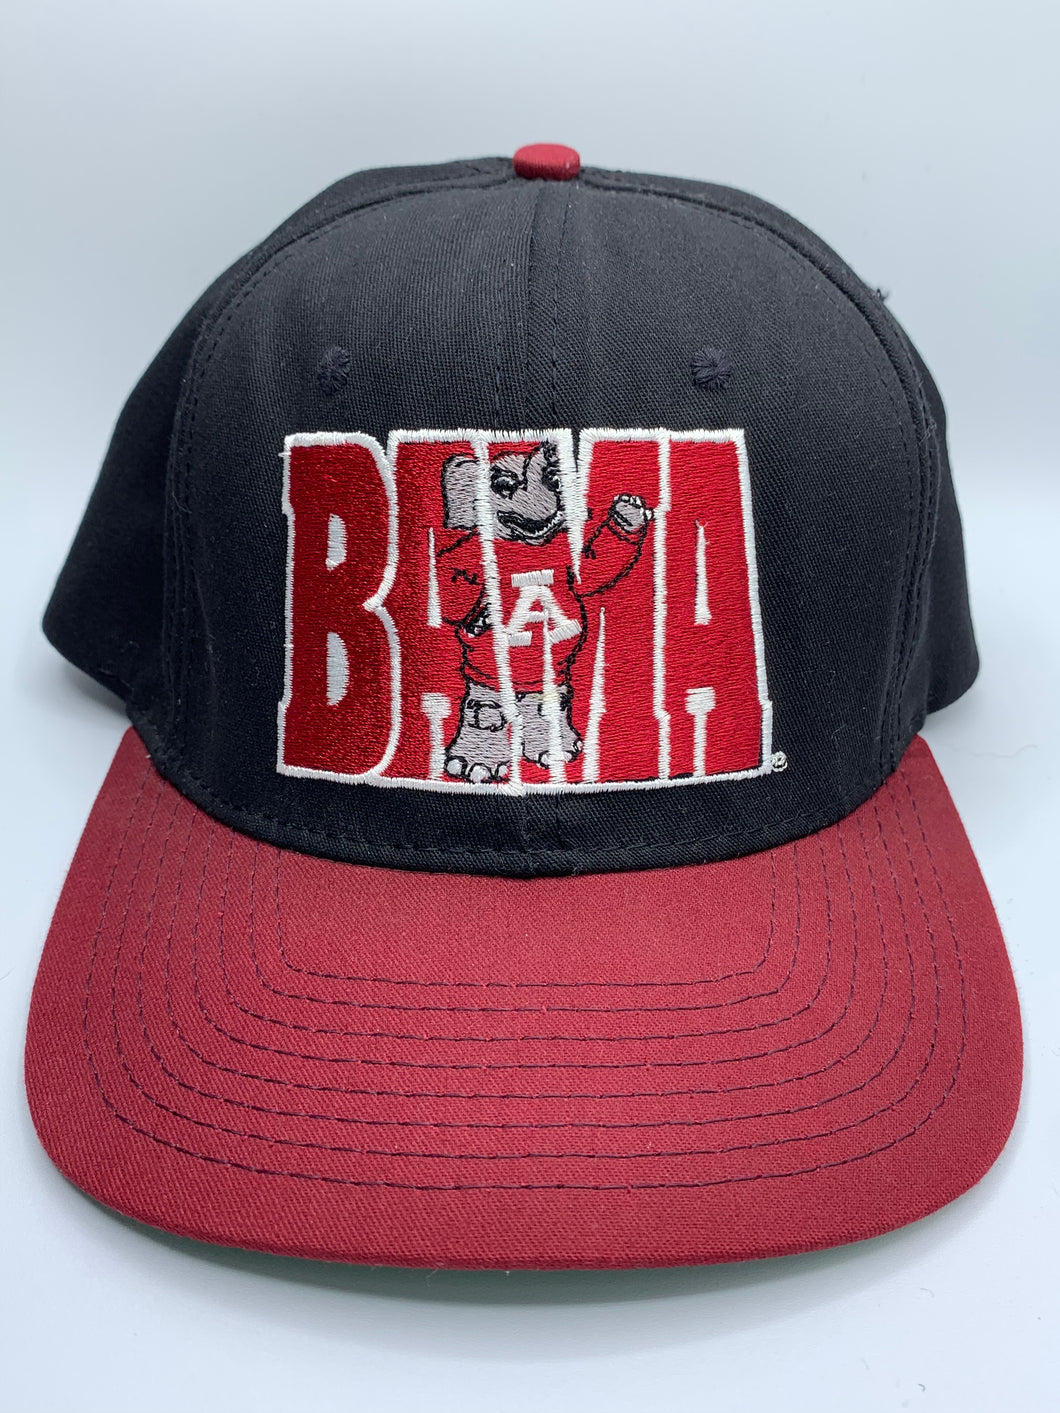 Vintage Bama Two Tone Snapback Hat